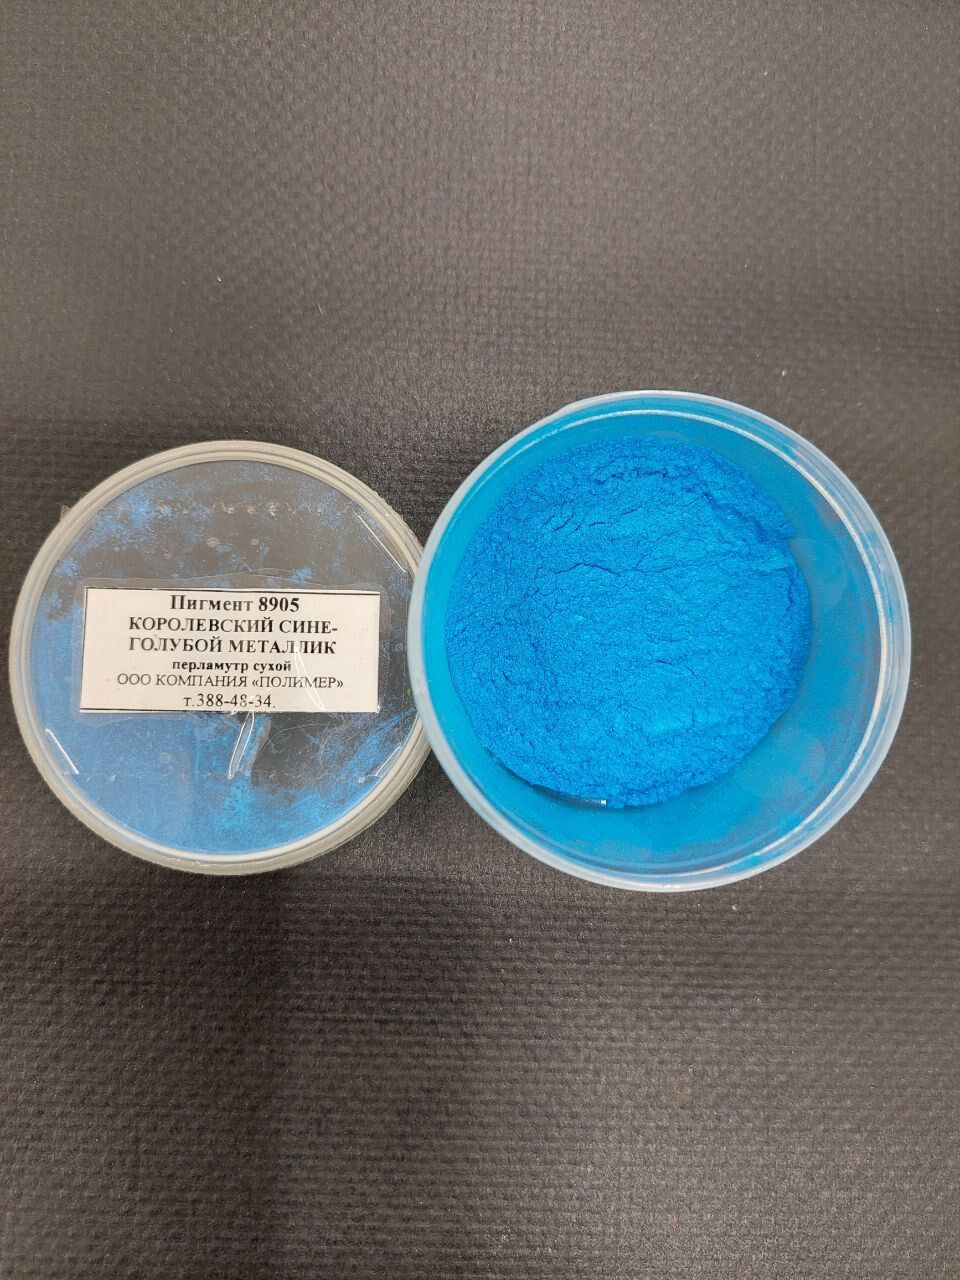 Пигмент 8905 королевский сине-голубой металлик перламутр сухой